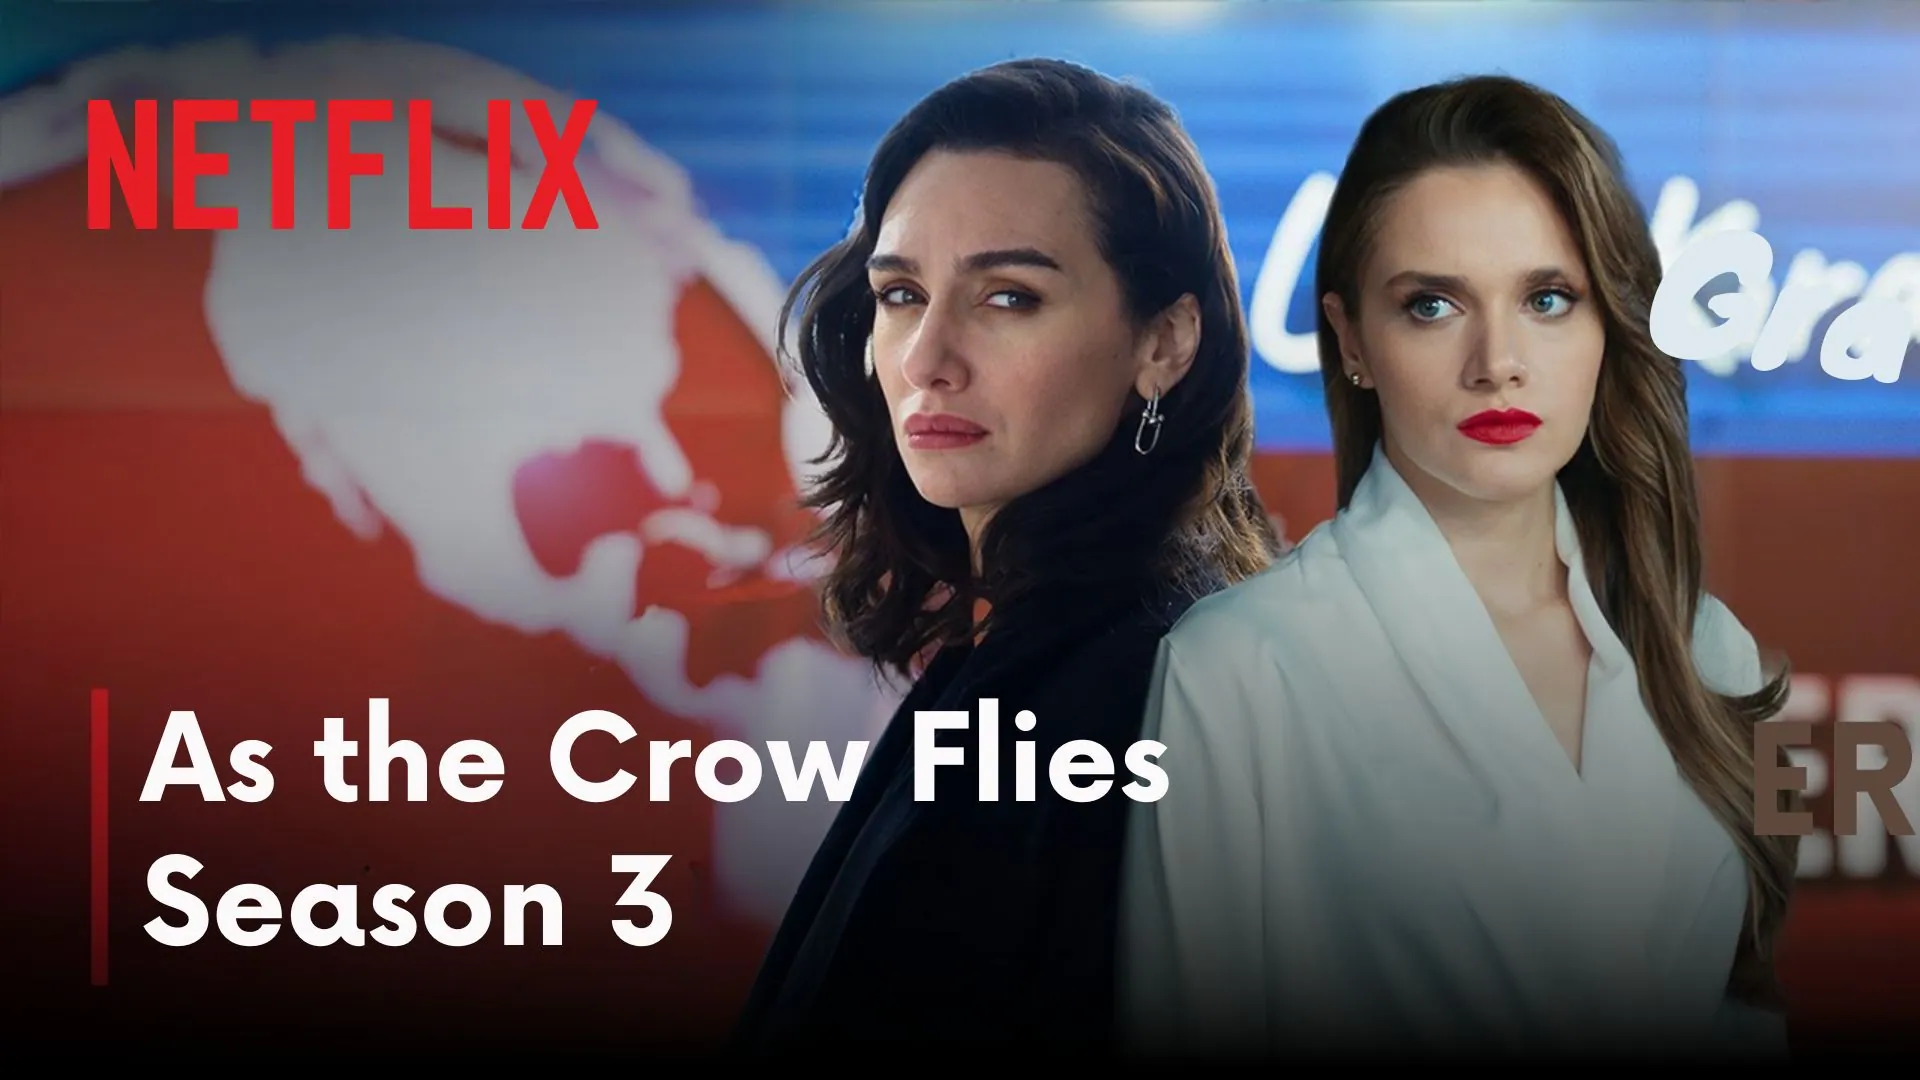 Netflix Announces Premiere Date for As the Crow Flies Season 3